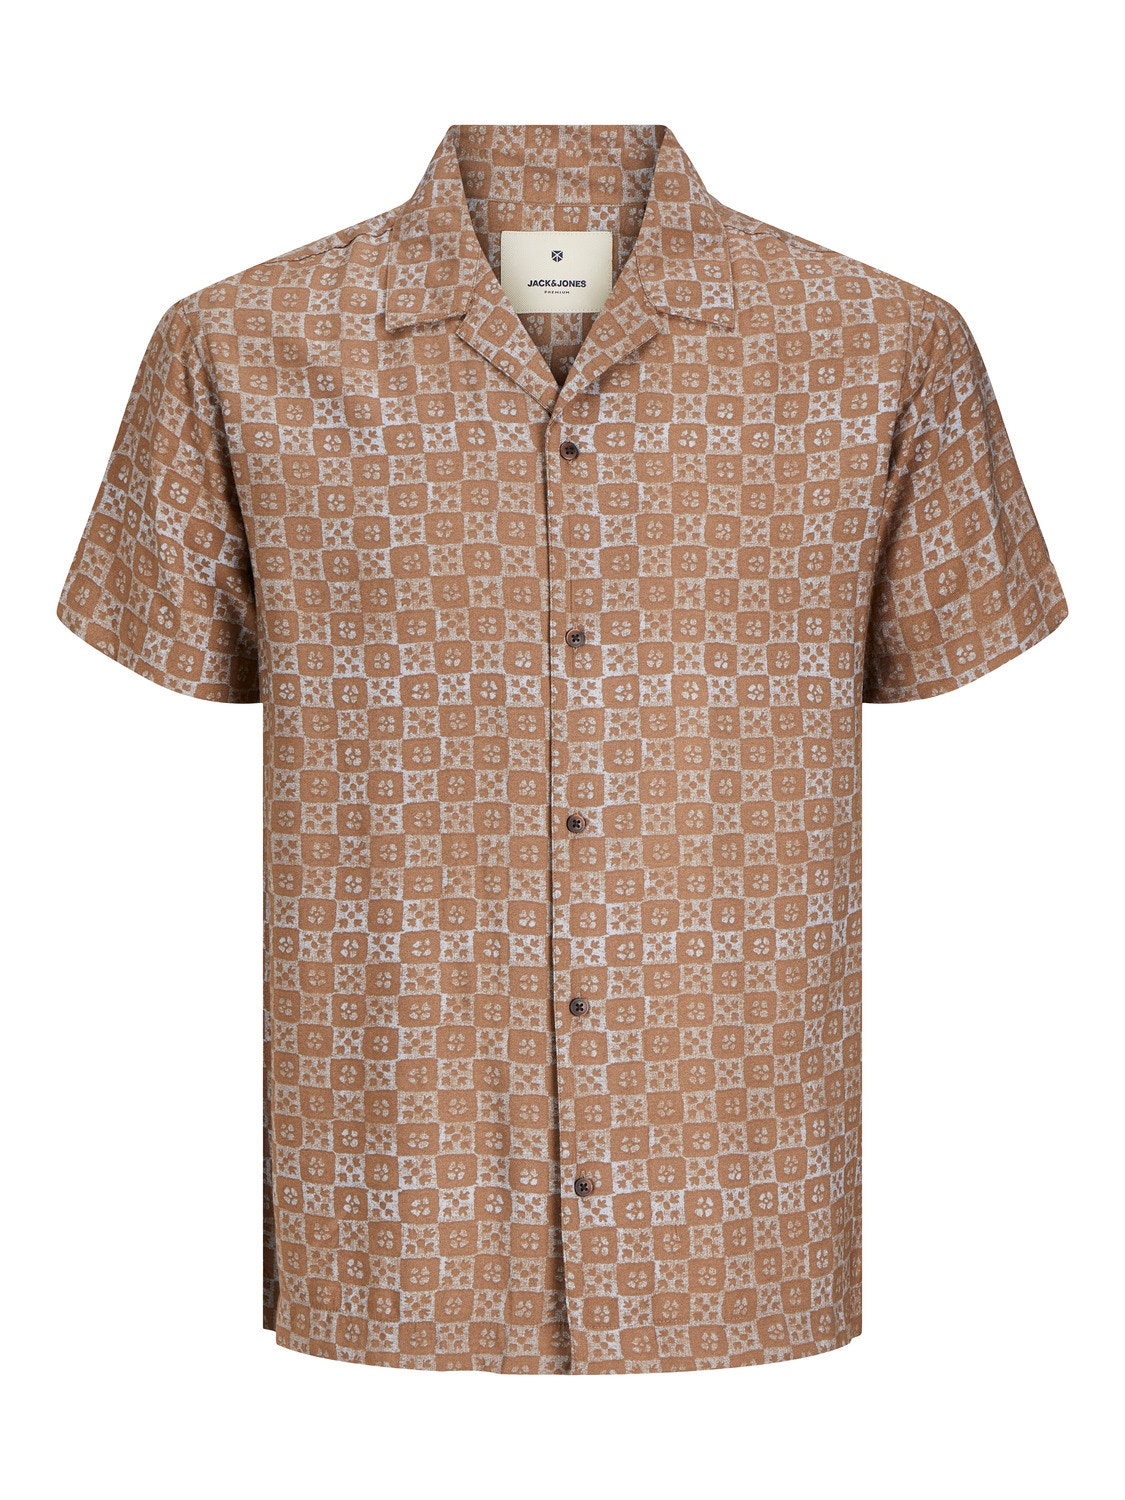 Jack & Jones Comfort Fit Resort shirt -Cub - 12255172